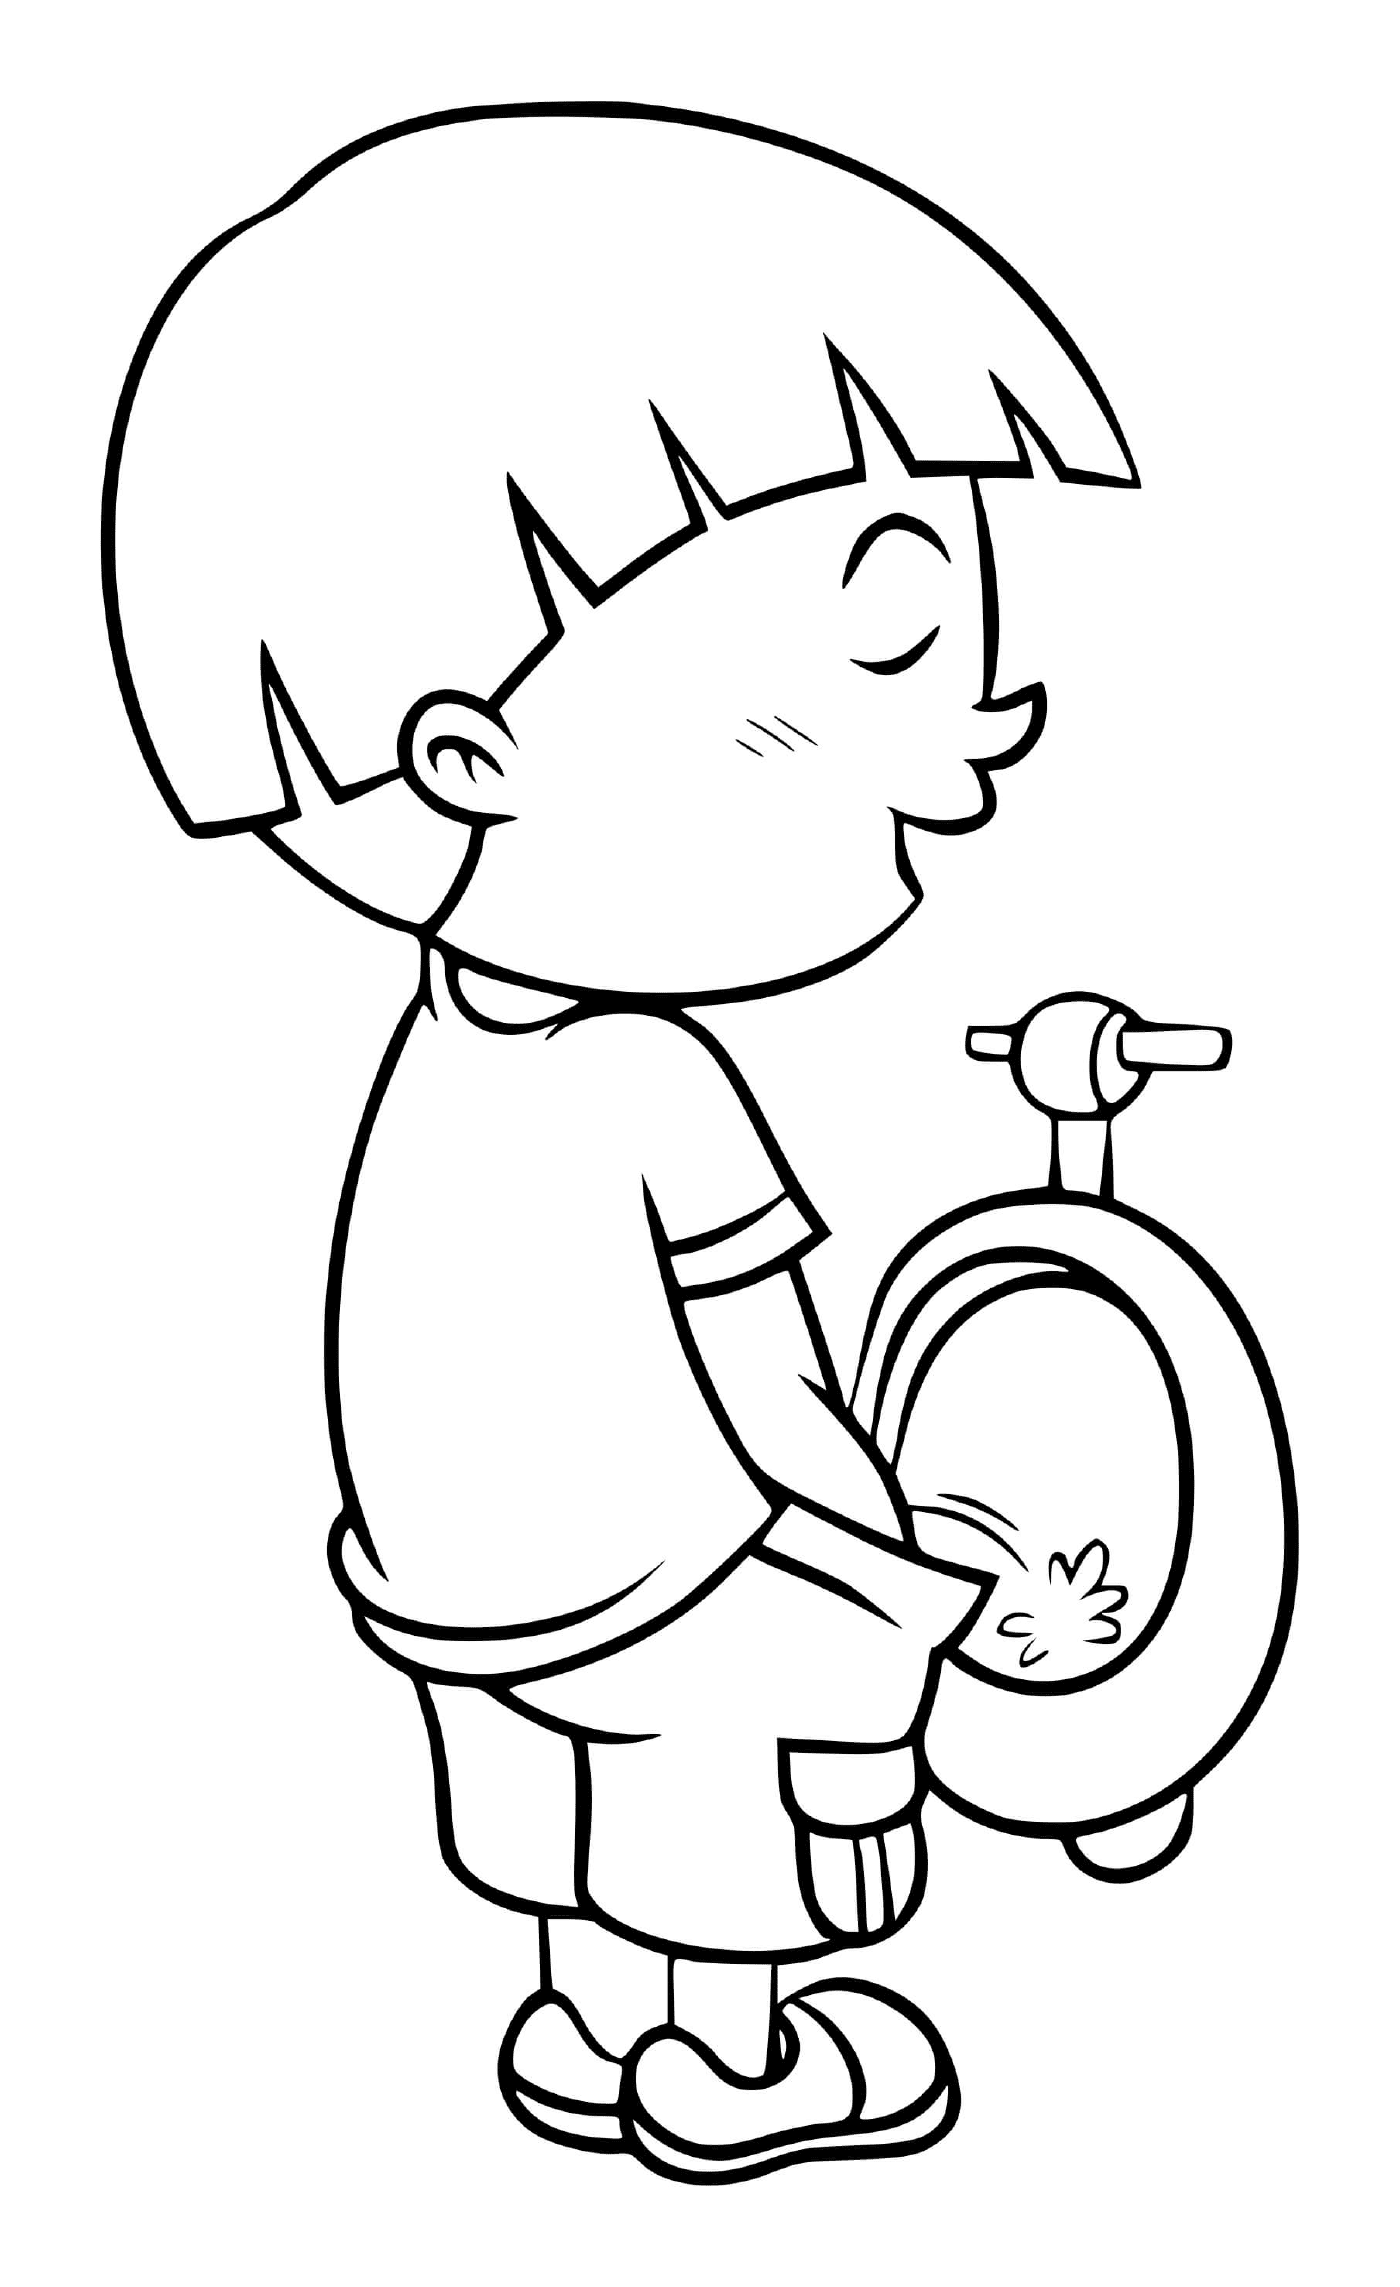  एक छोटा लड़का बाथरूम में बाथरूम जाता है 